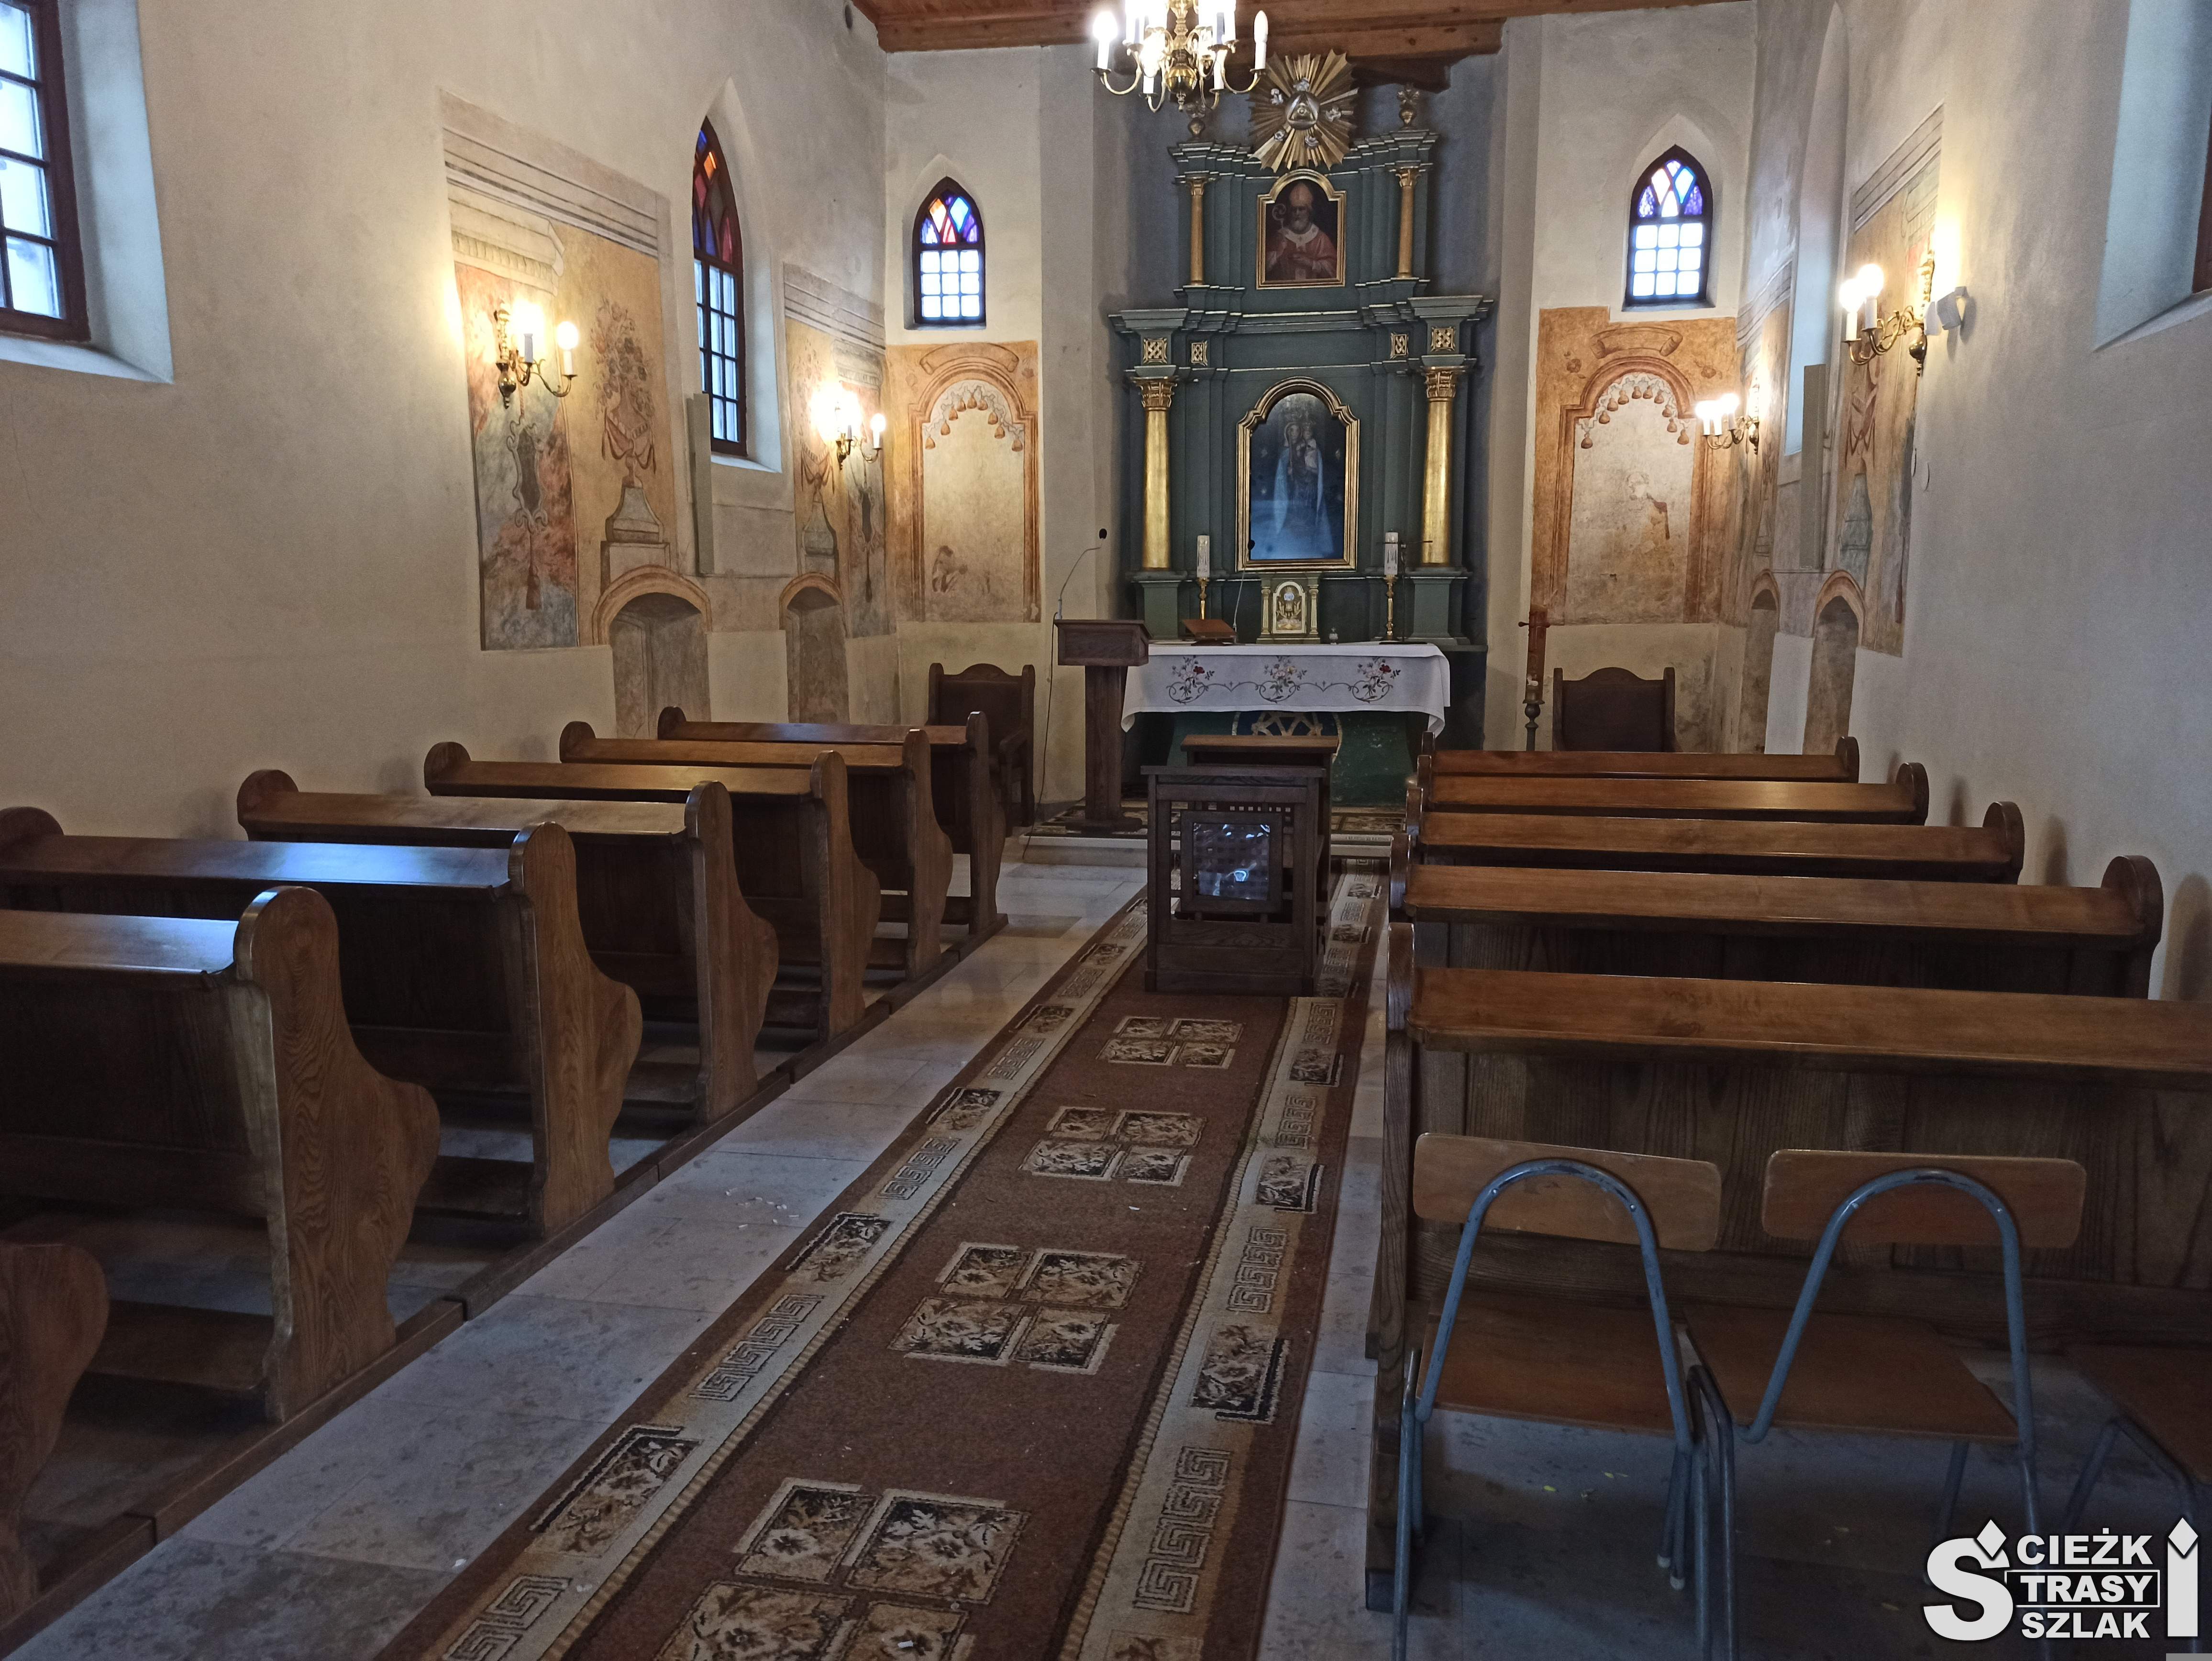 Drewniany ołtarz otoczony pierwotną polichromią w kaplicy cmentarnej w Bydlinie z ławkami